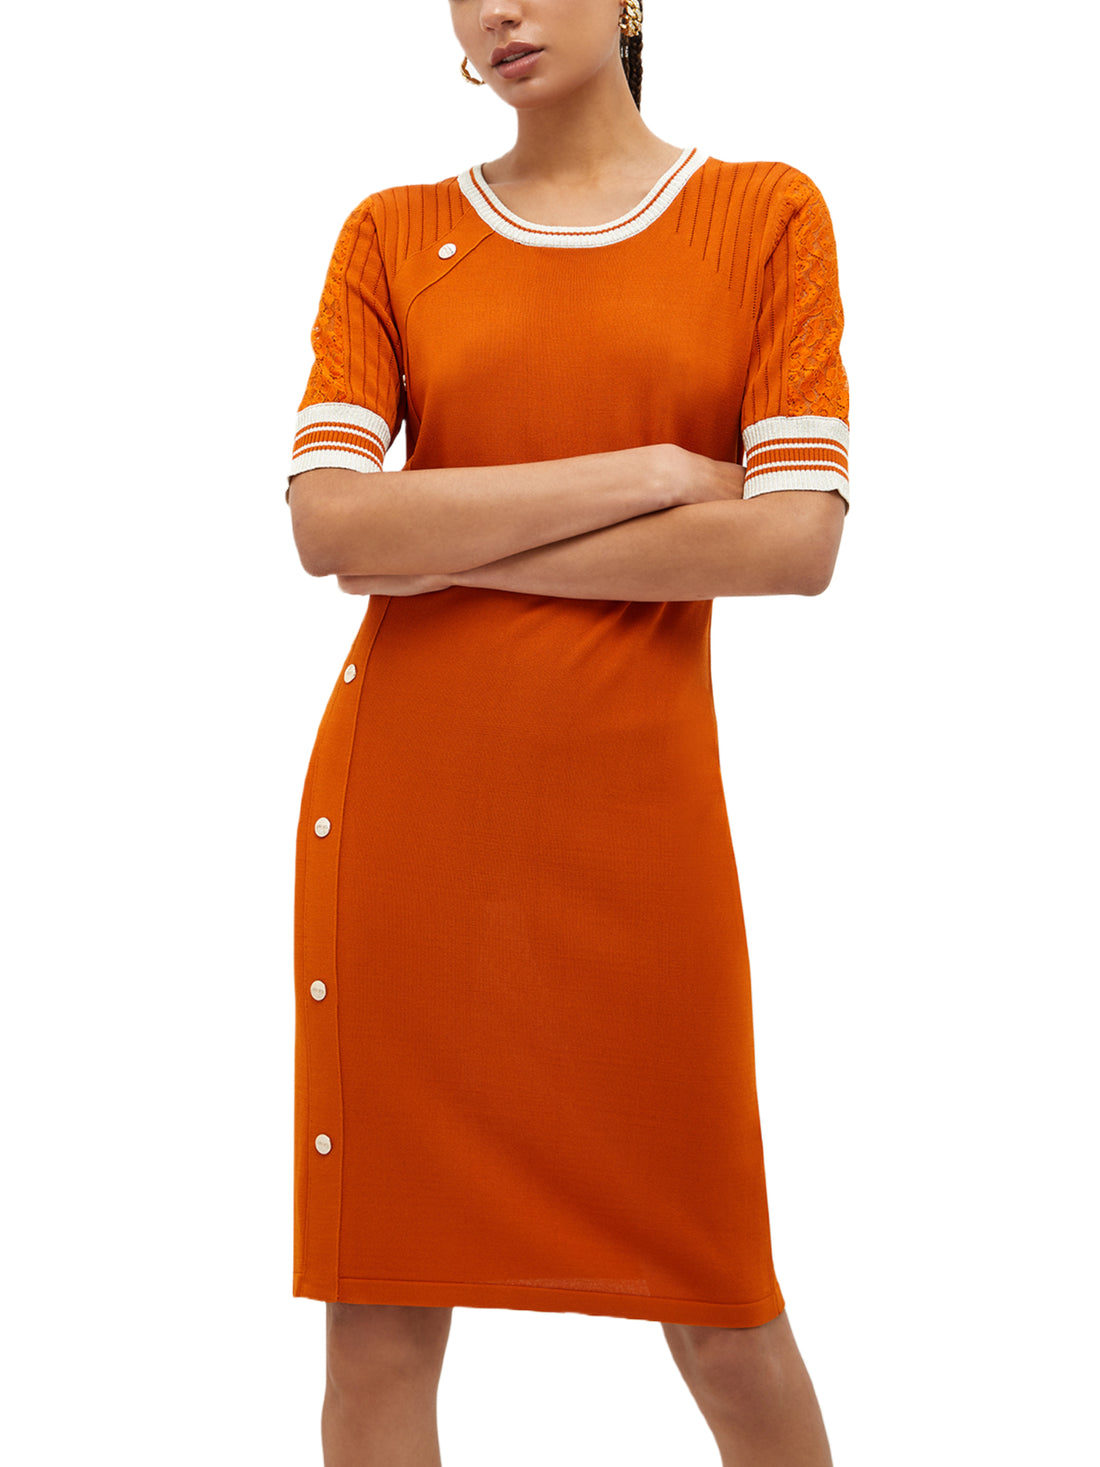 Vestiti Arancio Liu-jo